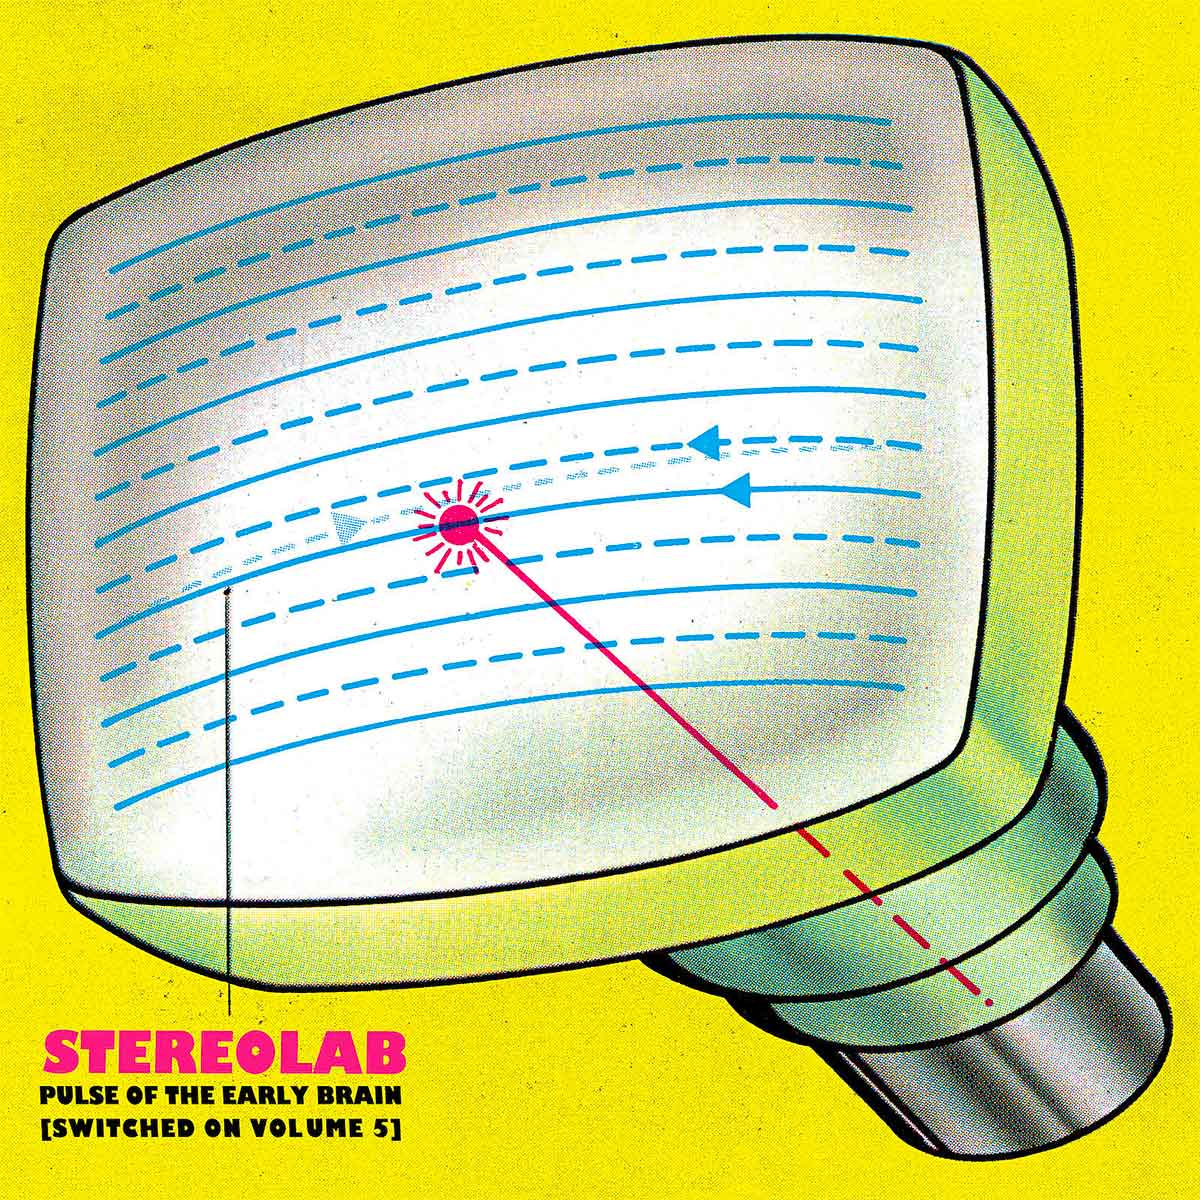 Tapa de Pulse of the Early Brain, disco recopilatorio de Stereolab